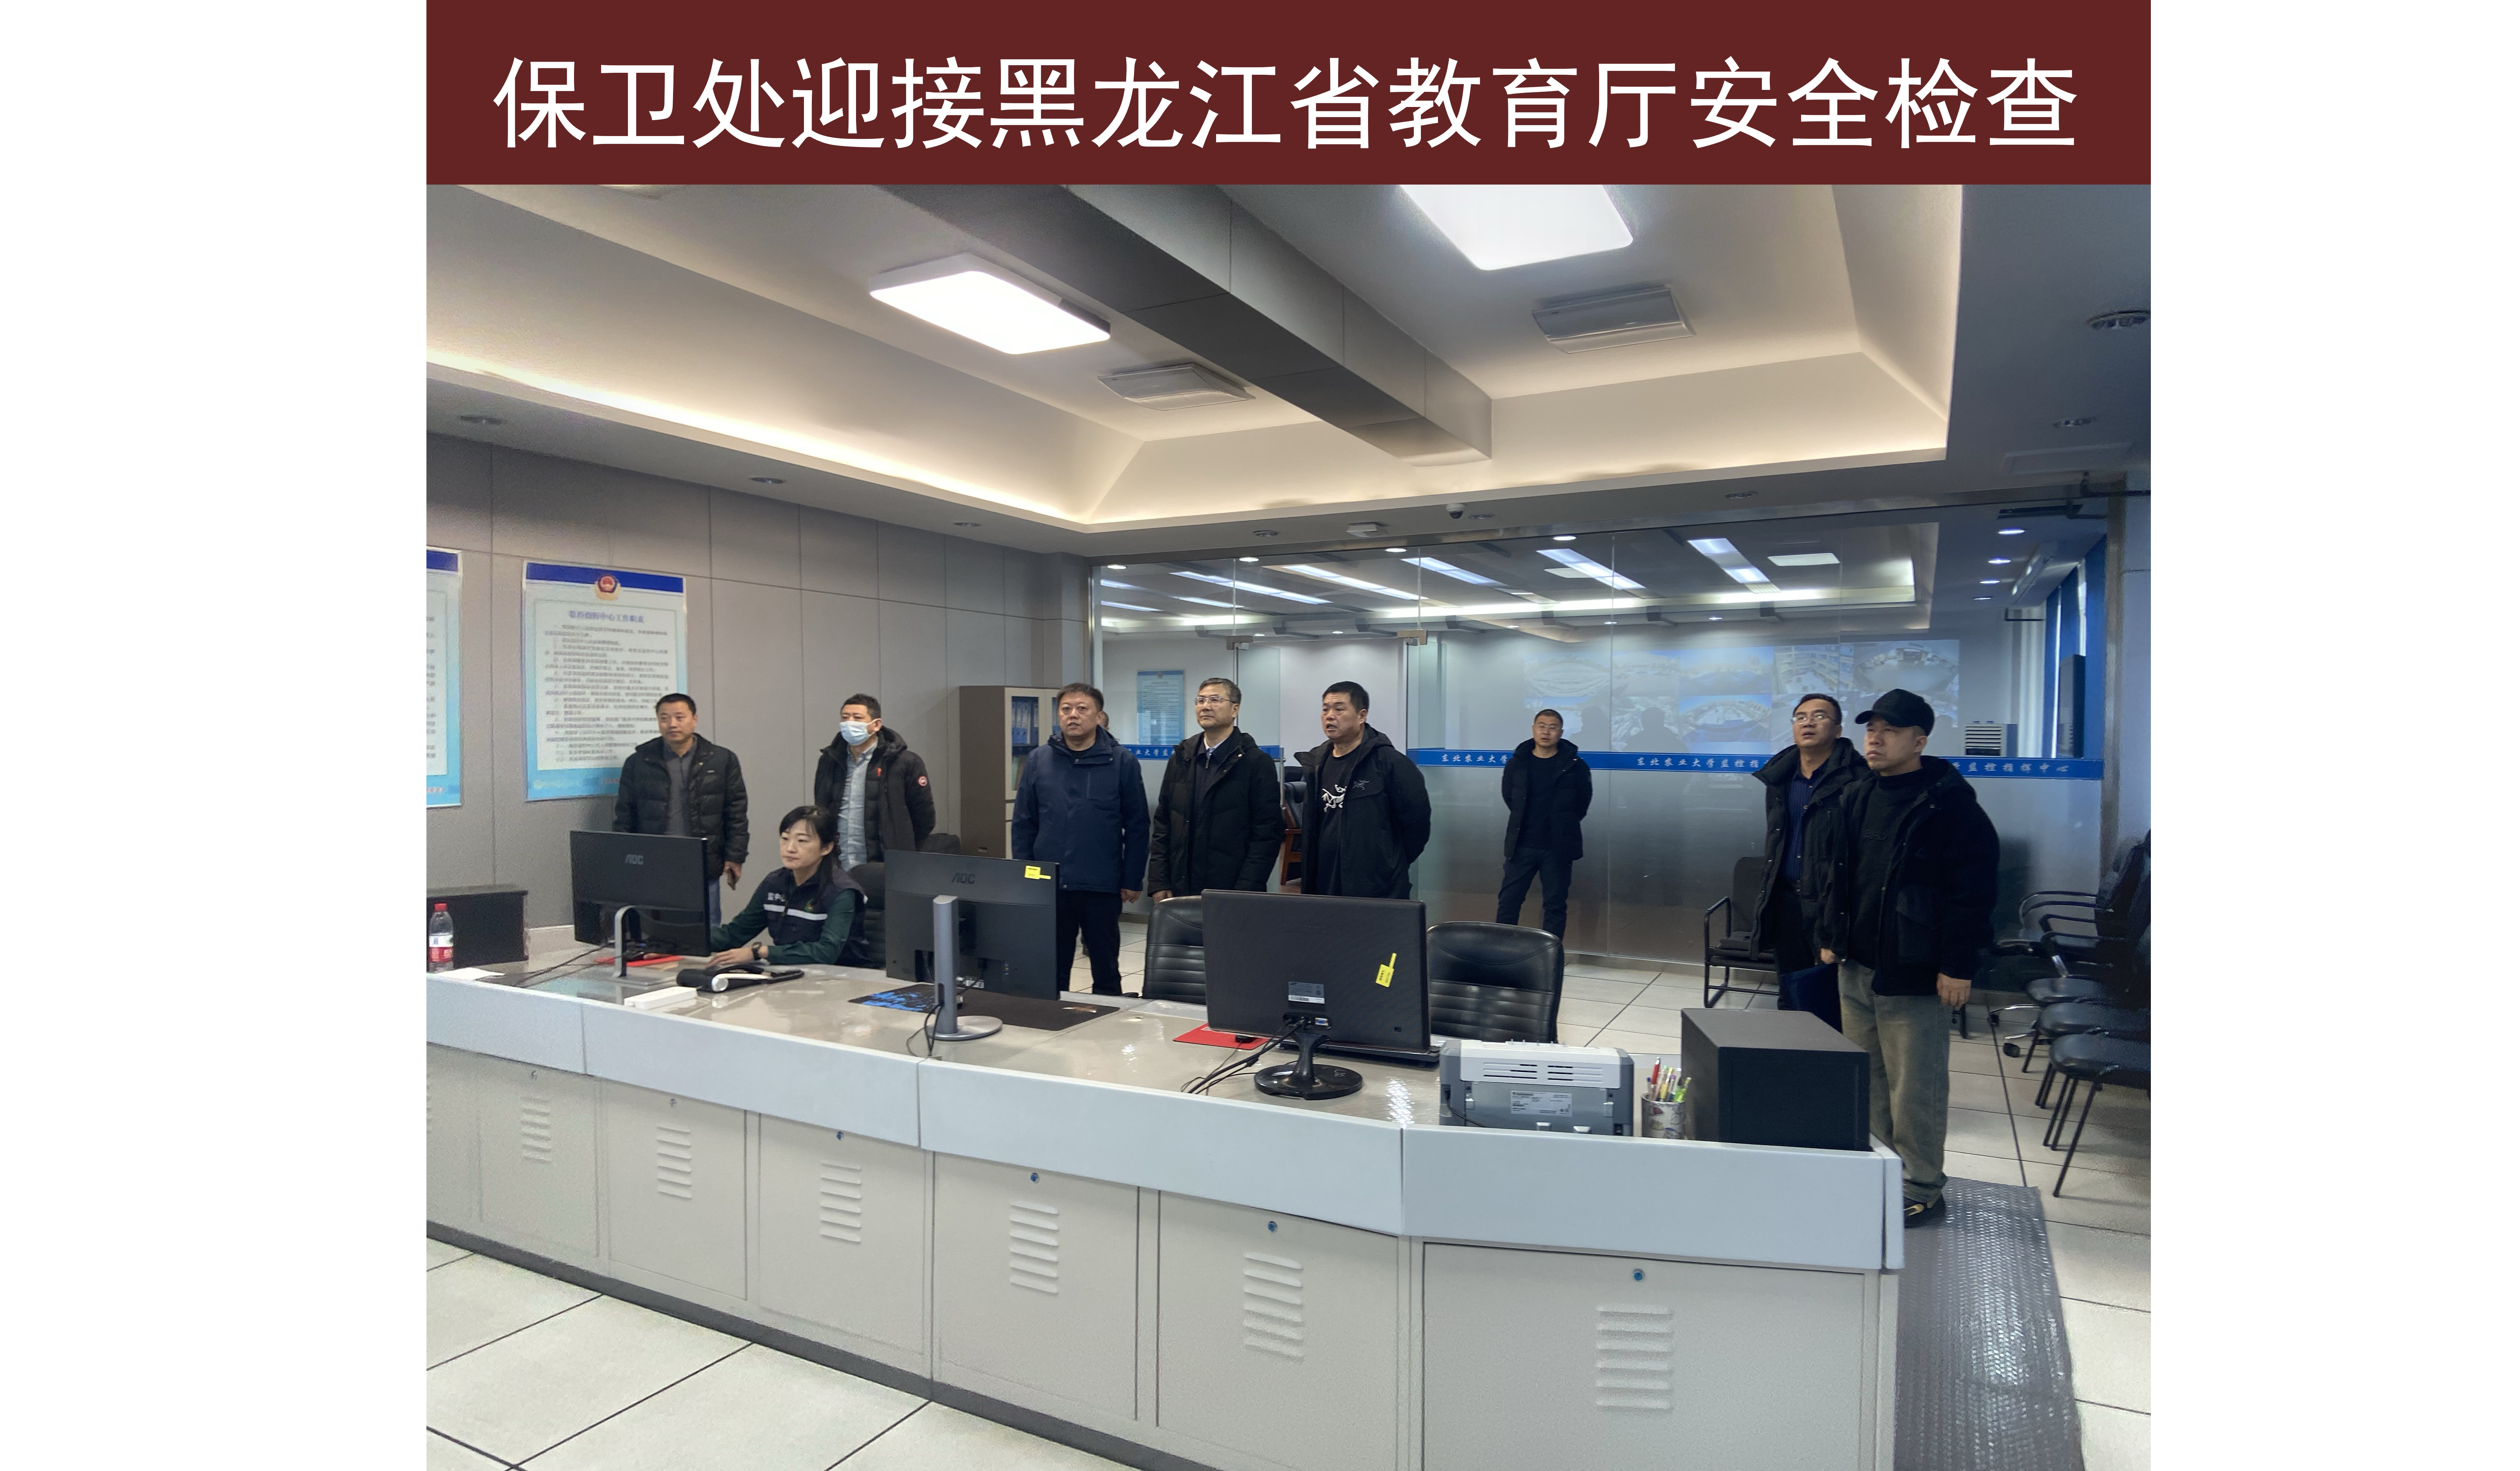 保卫处迎接黑龙江省教育厅安全检查